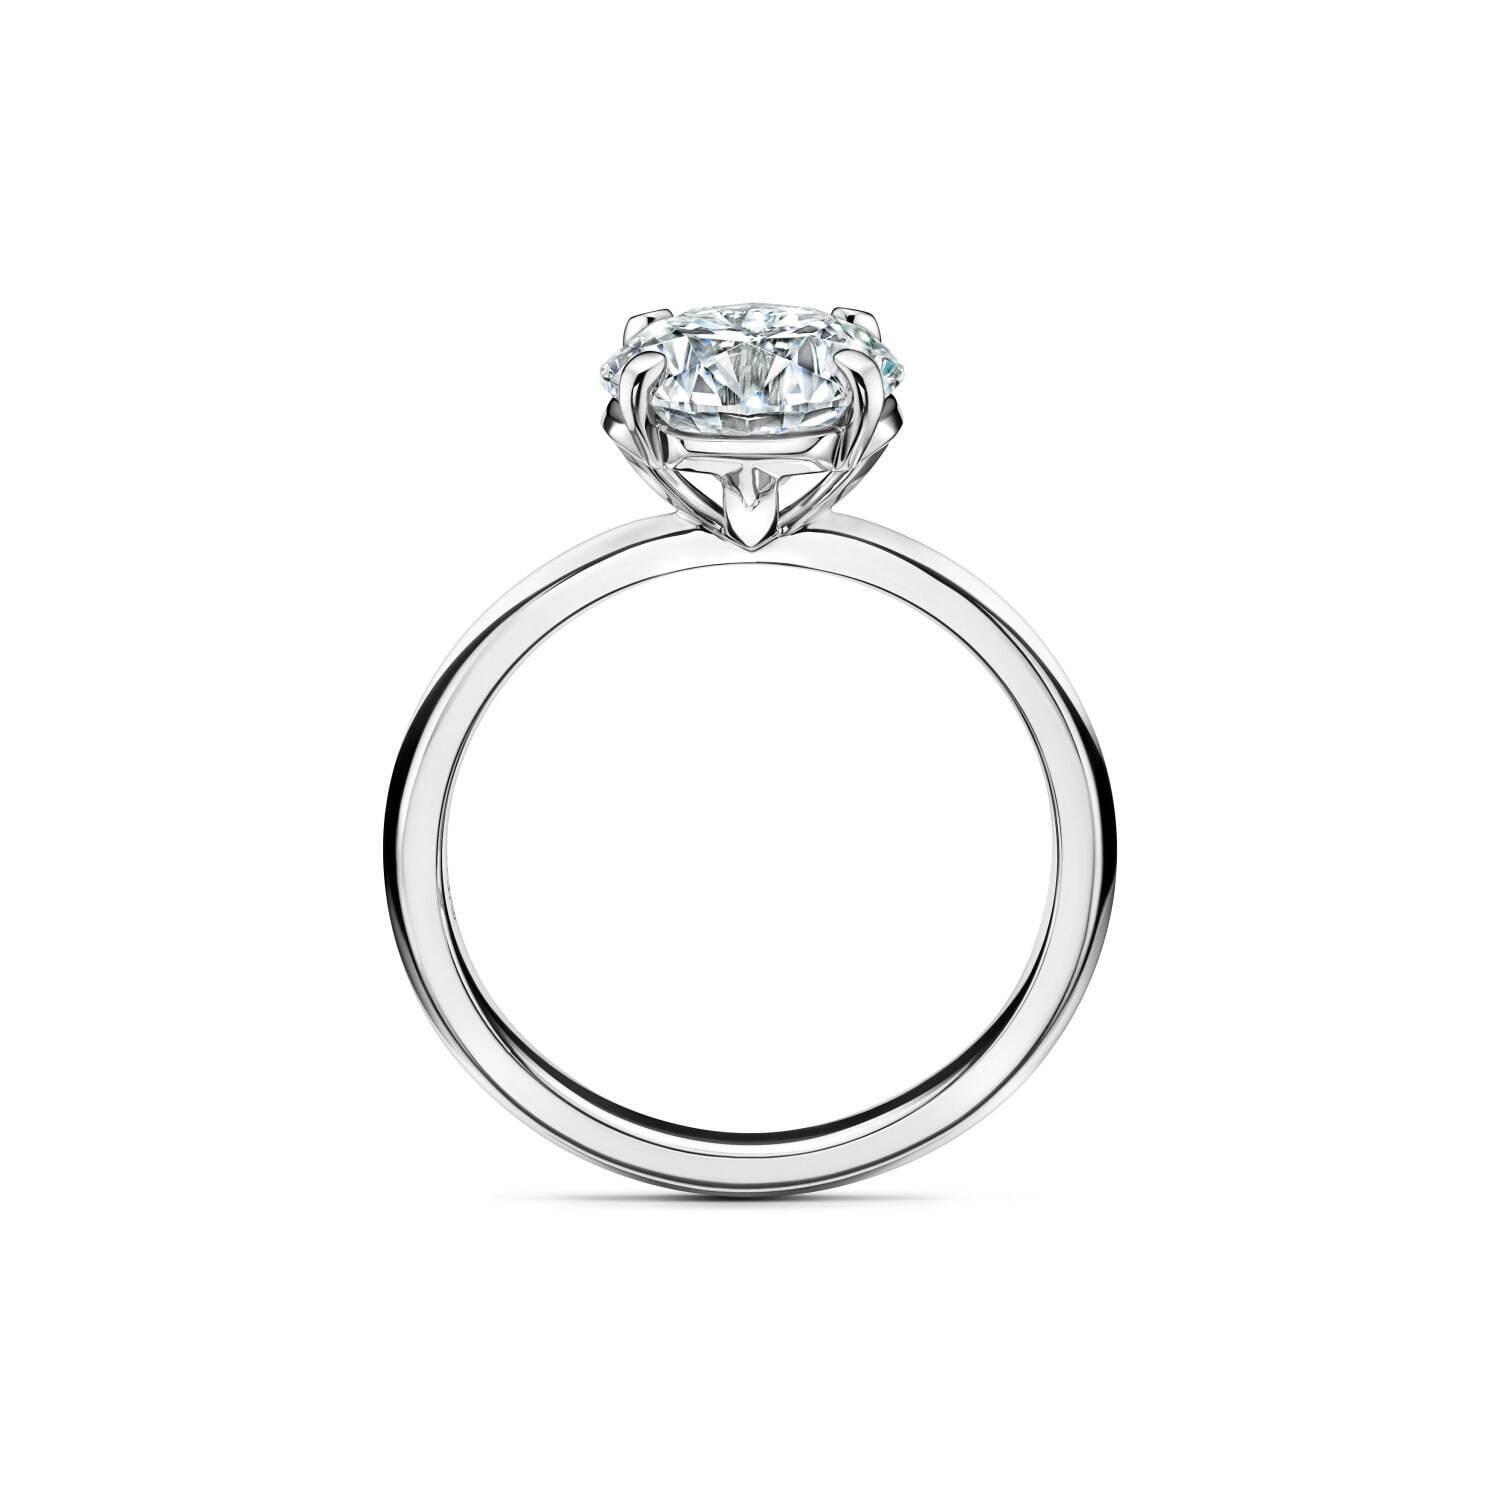 「ティファニー トゥルー」の新作婚約指輪、構築的な“T”モチーフでダイヤモンドをセット コピー